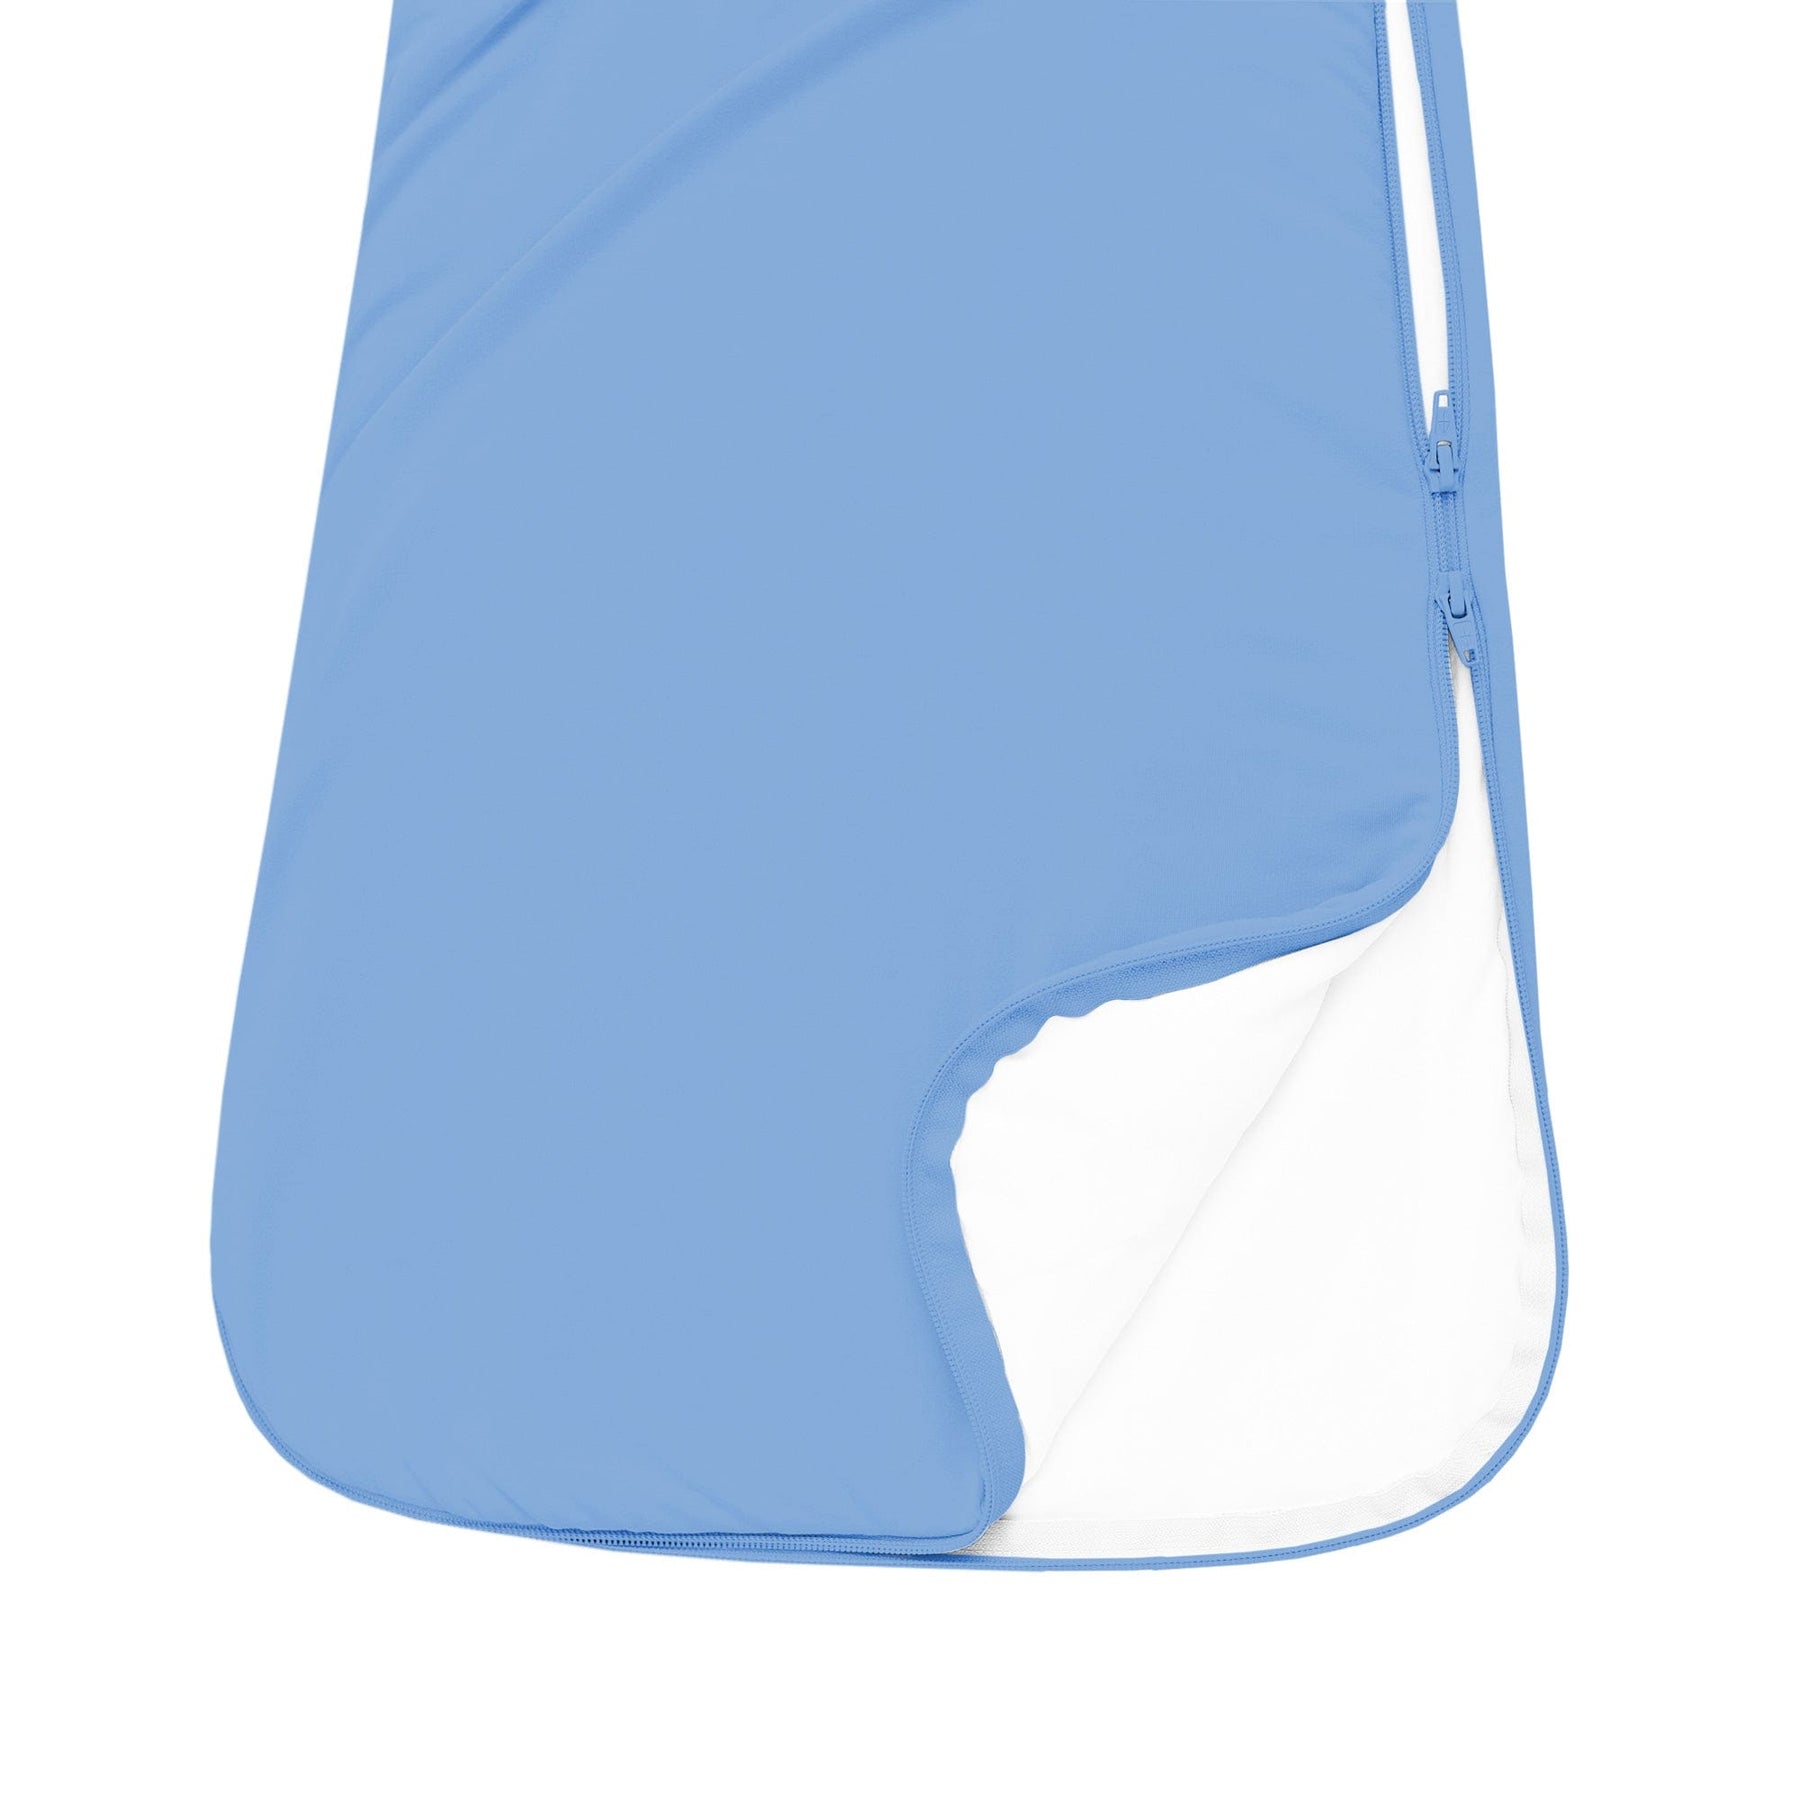 Kyte BABY Sleep Bag 1.0 Tog Sleep Bag in Periwinkle 1.0